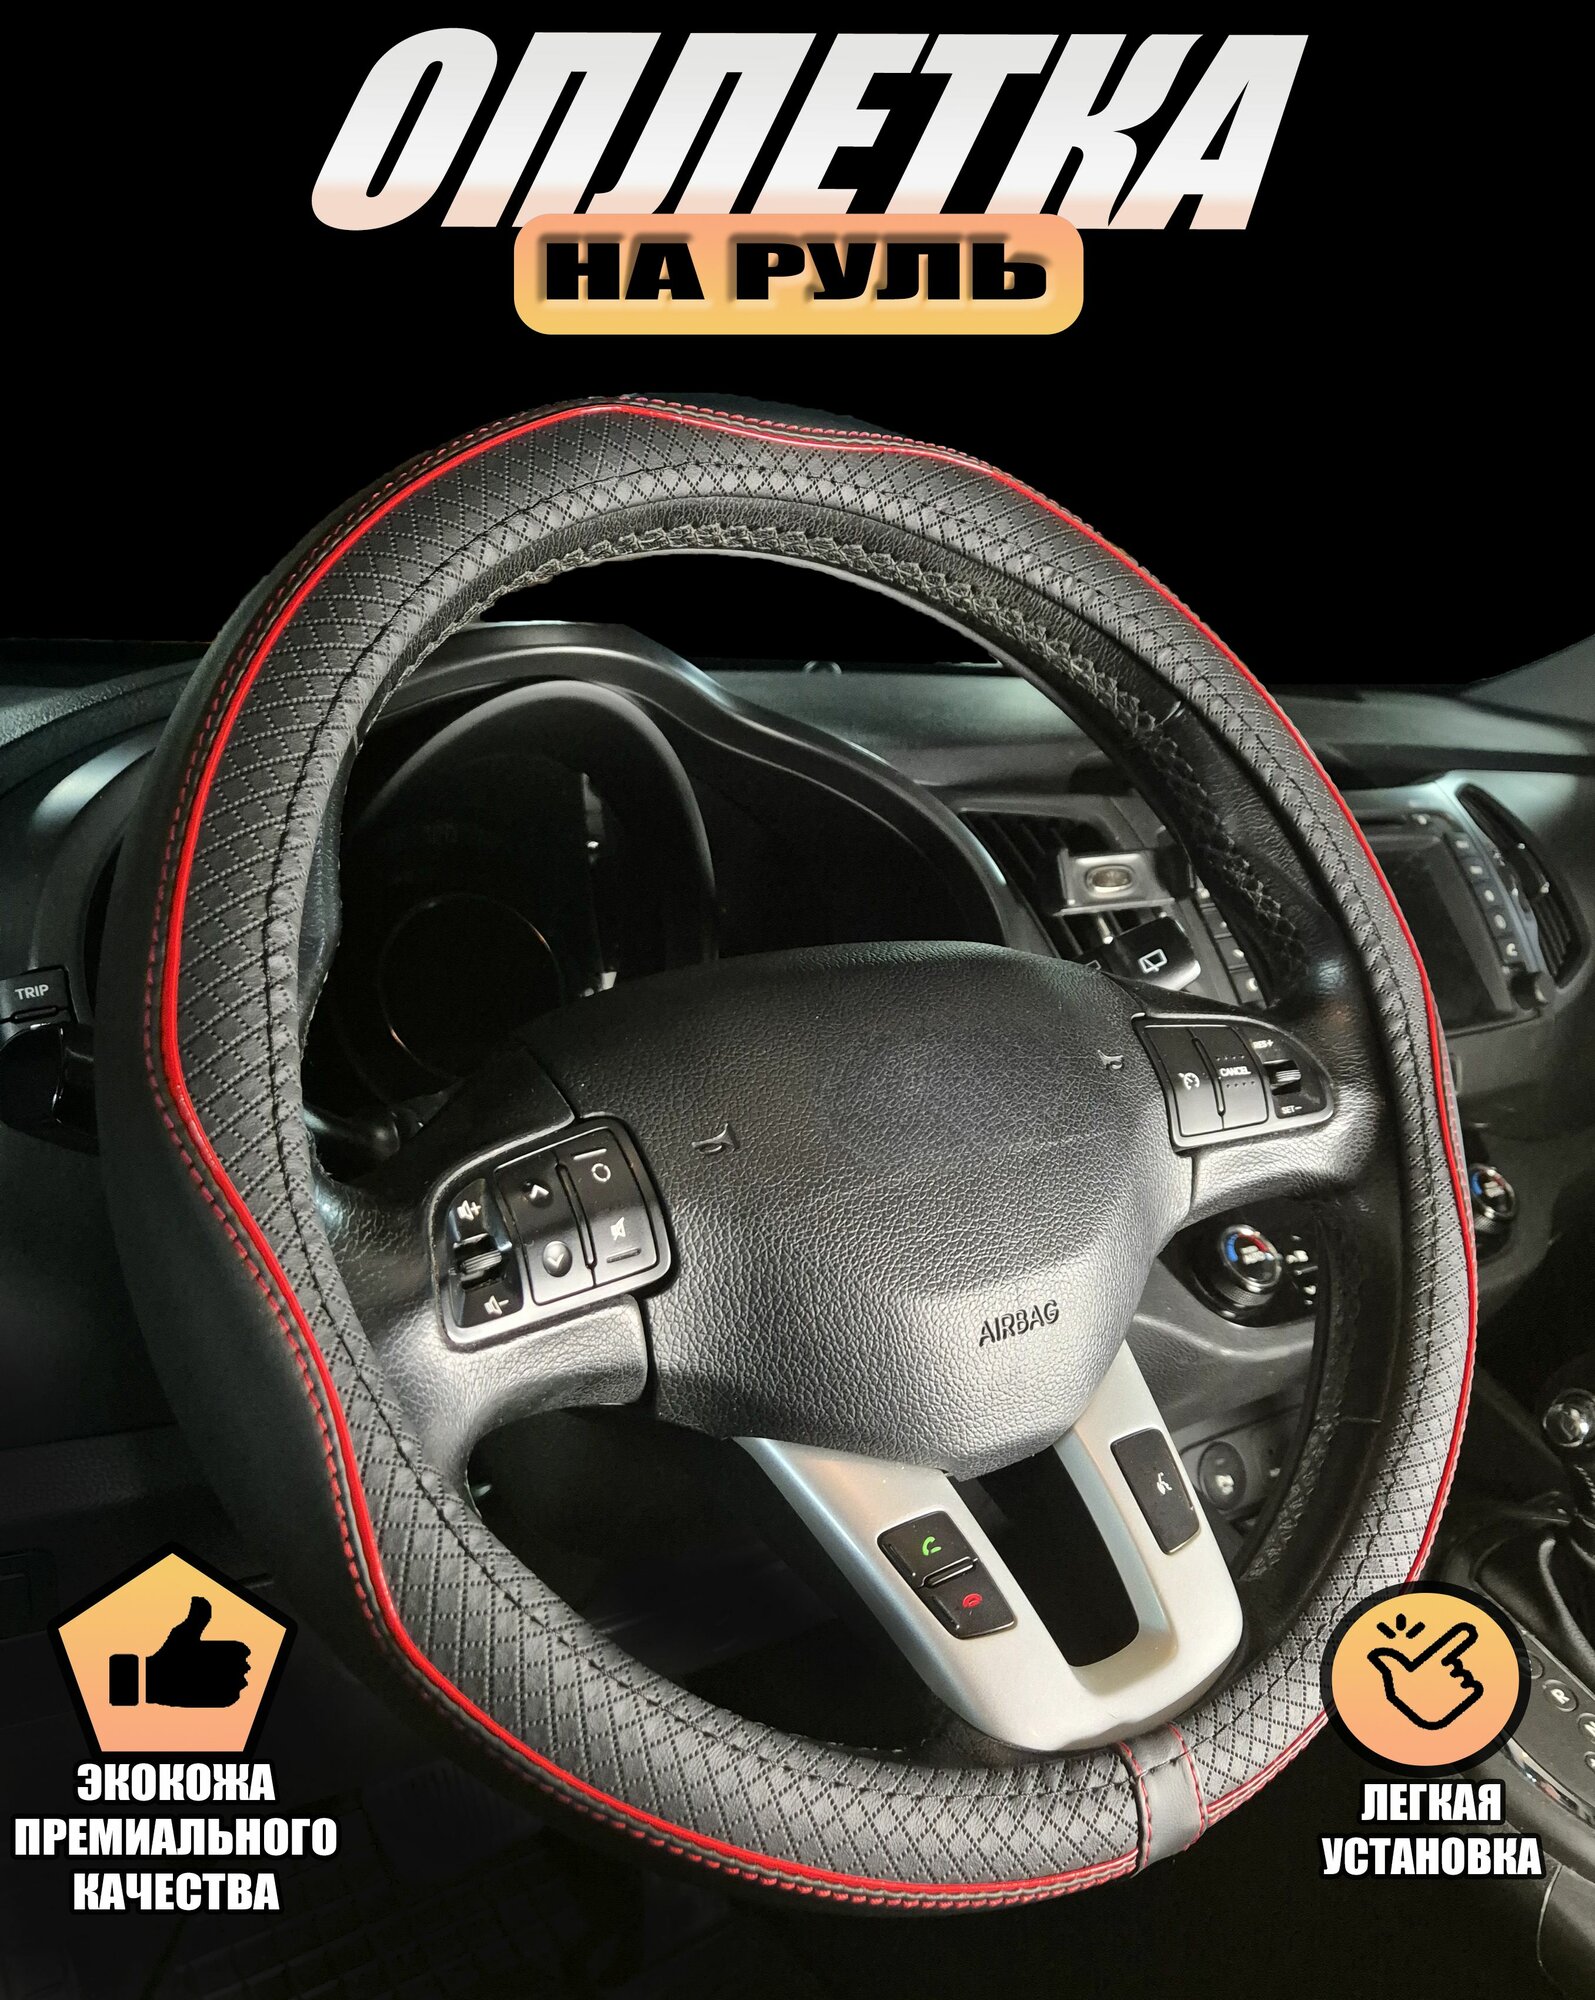 Оплетка, чехол (накидка) на руль Хонда цр-з (2010 - 2016) хэтчбек 3 двери / Honda CR-Z, экокожа (премиального качества), Черный с красной строчкой